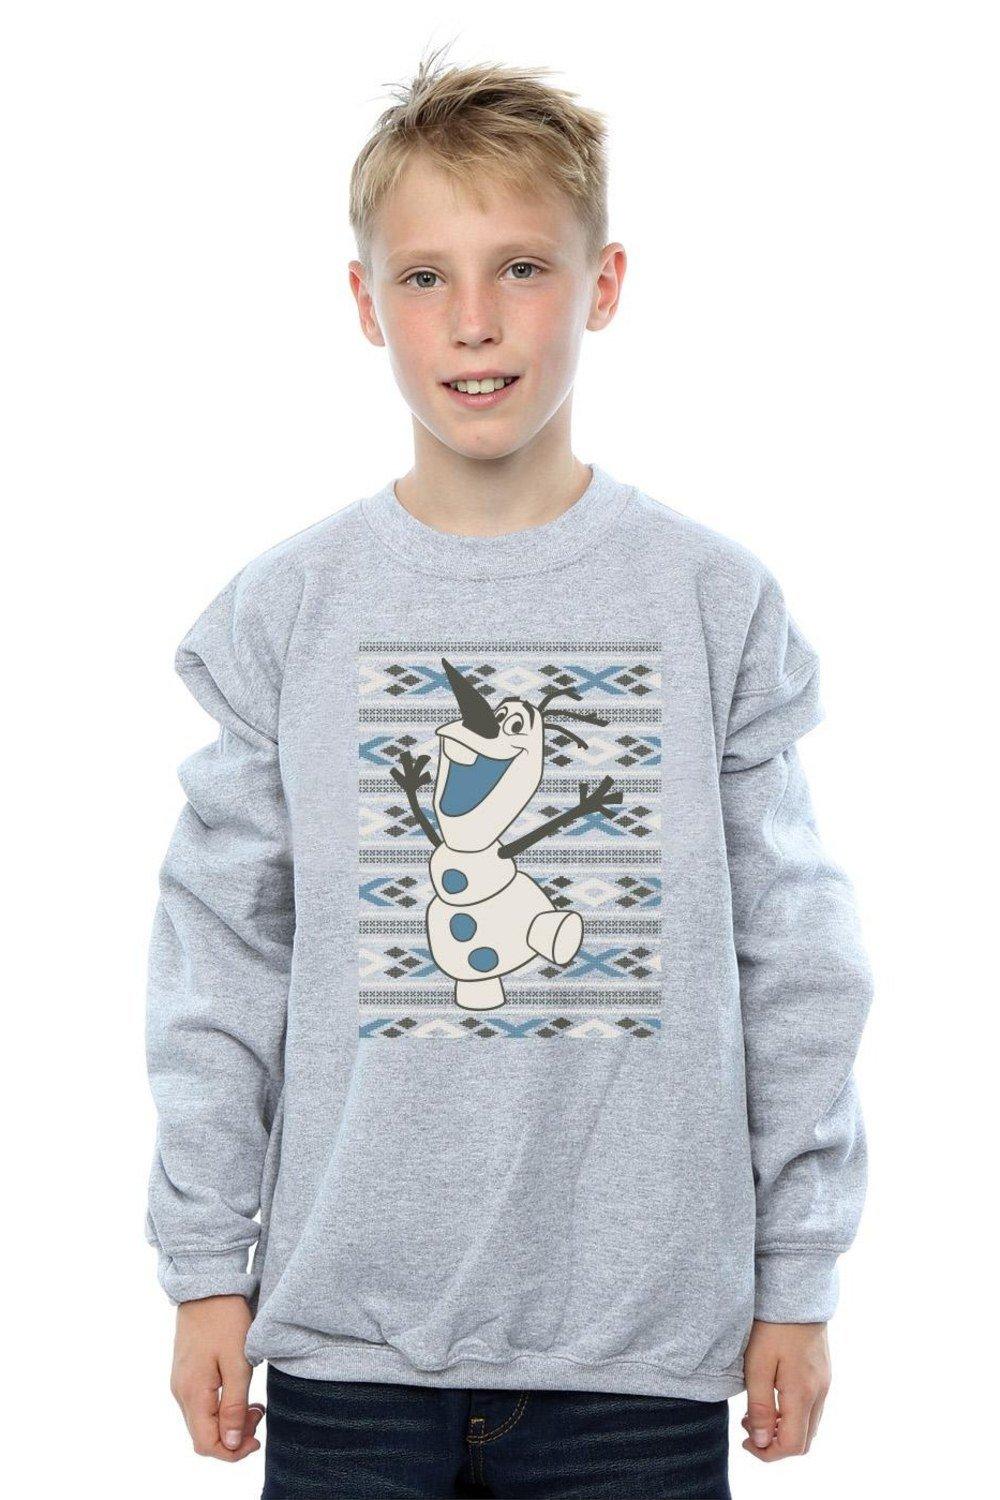 Frozen Christmas Olaf Smile Sweatshirt